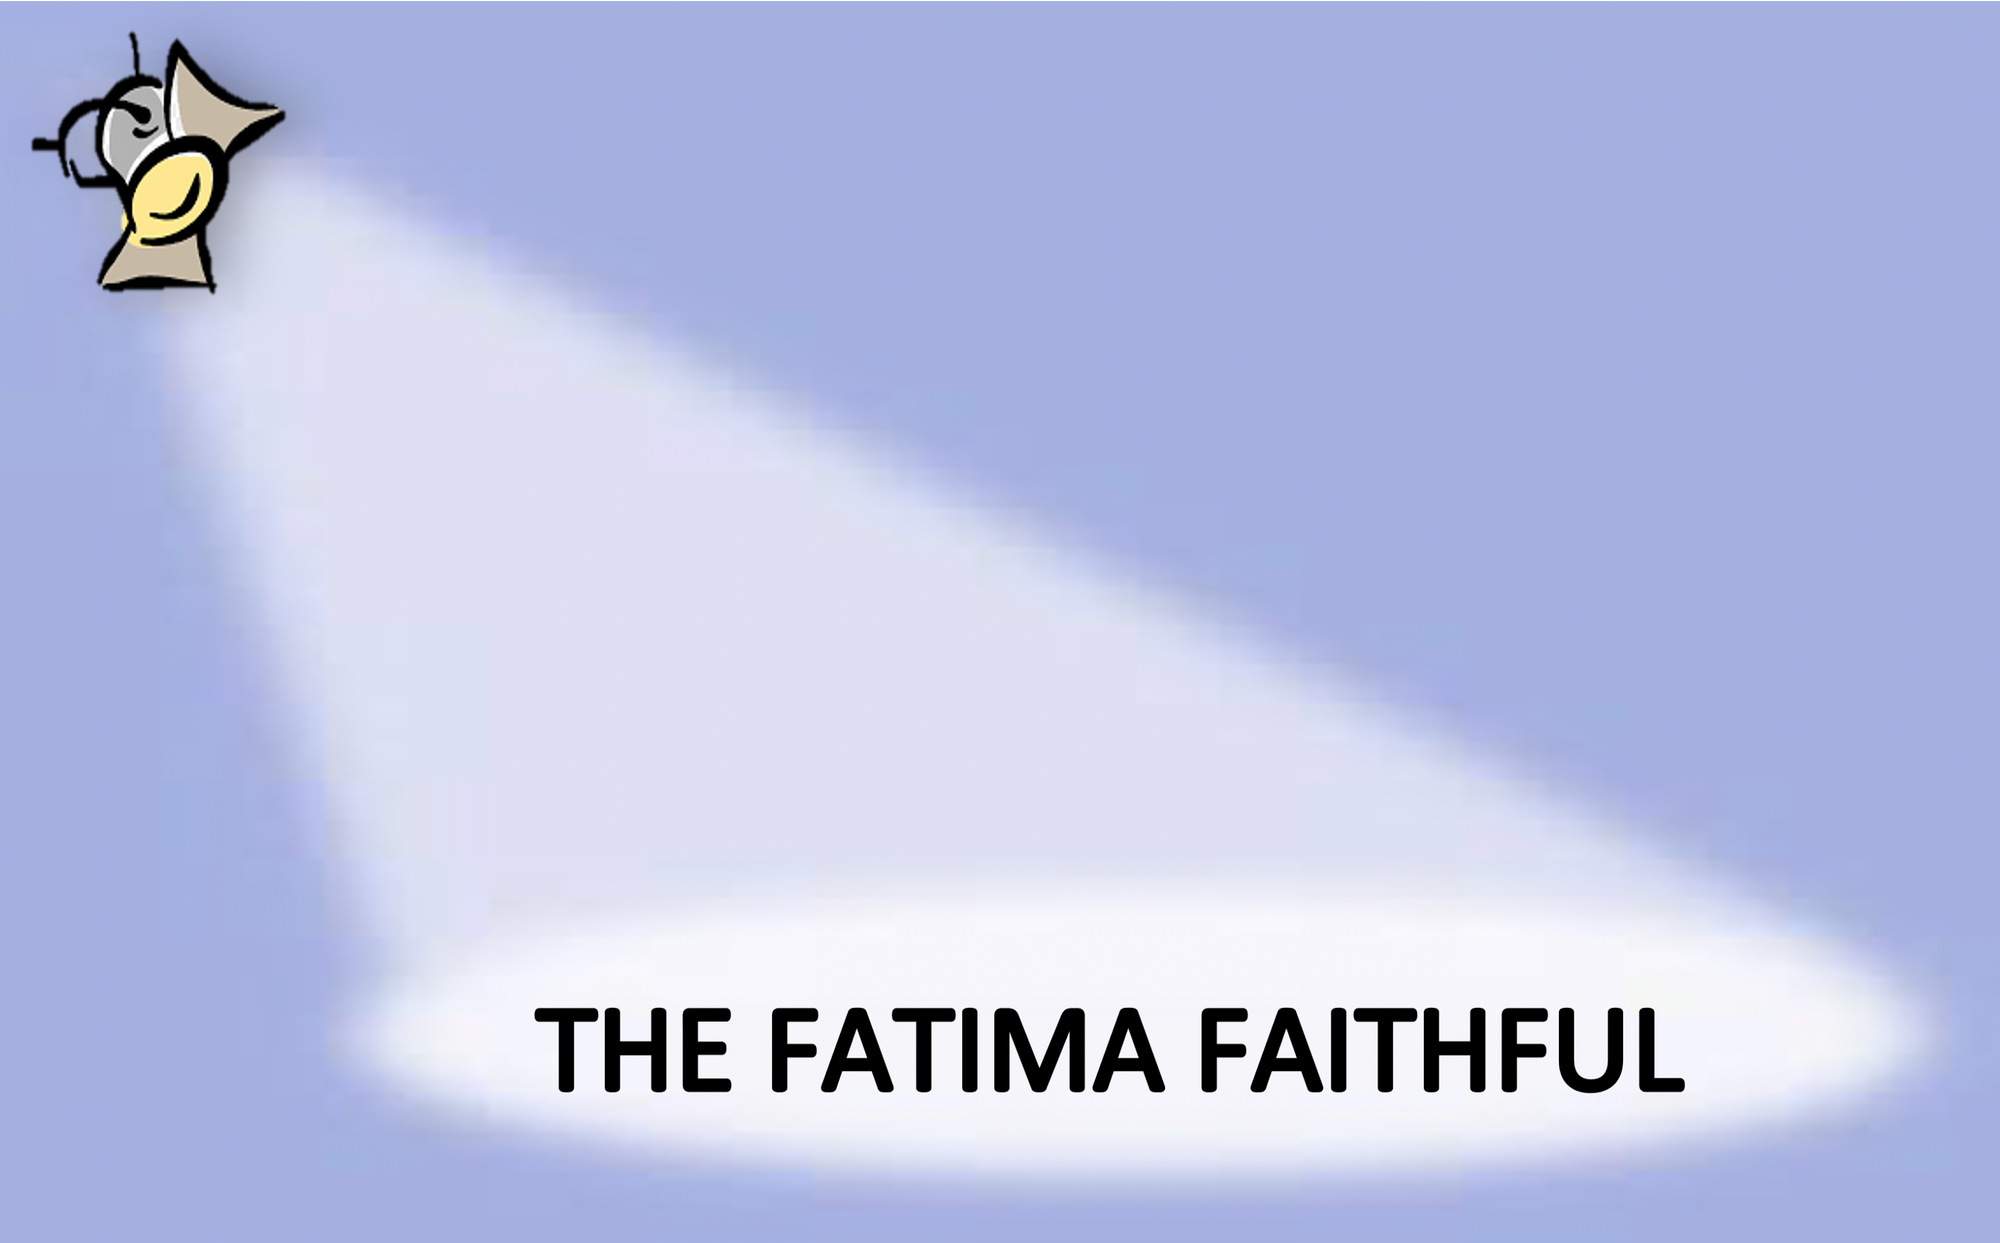 The Fatima Faithful for June 2021